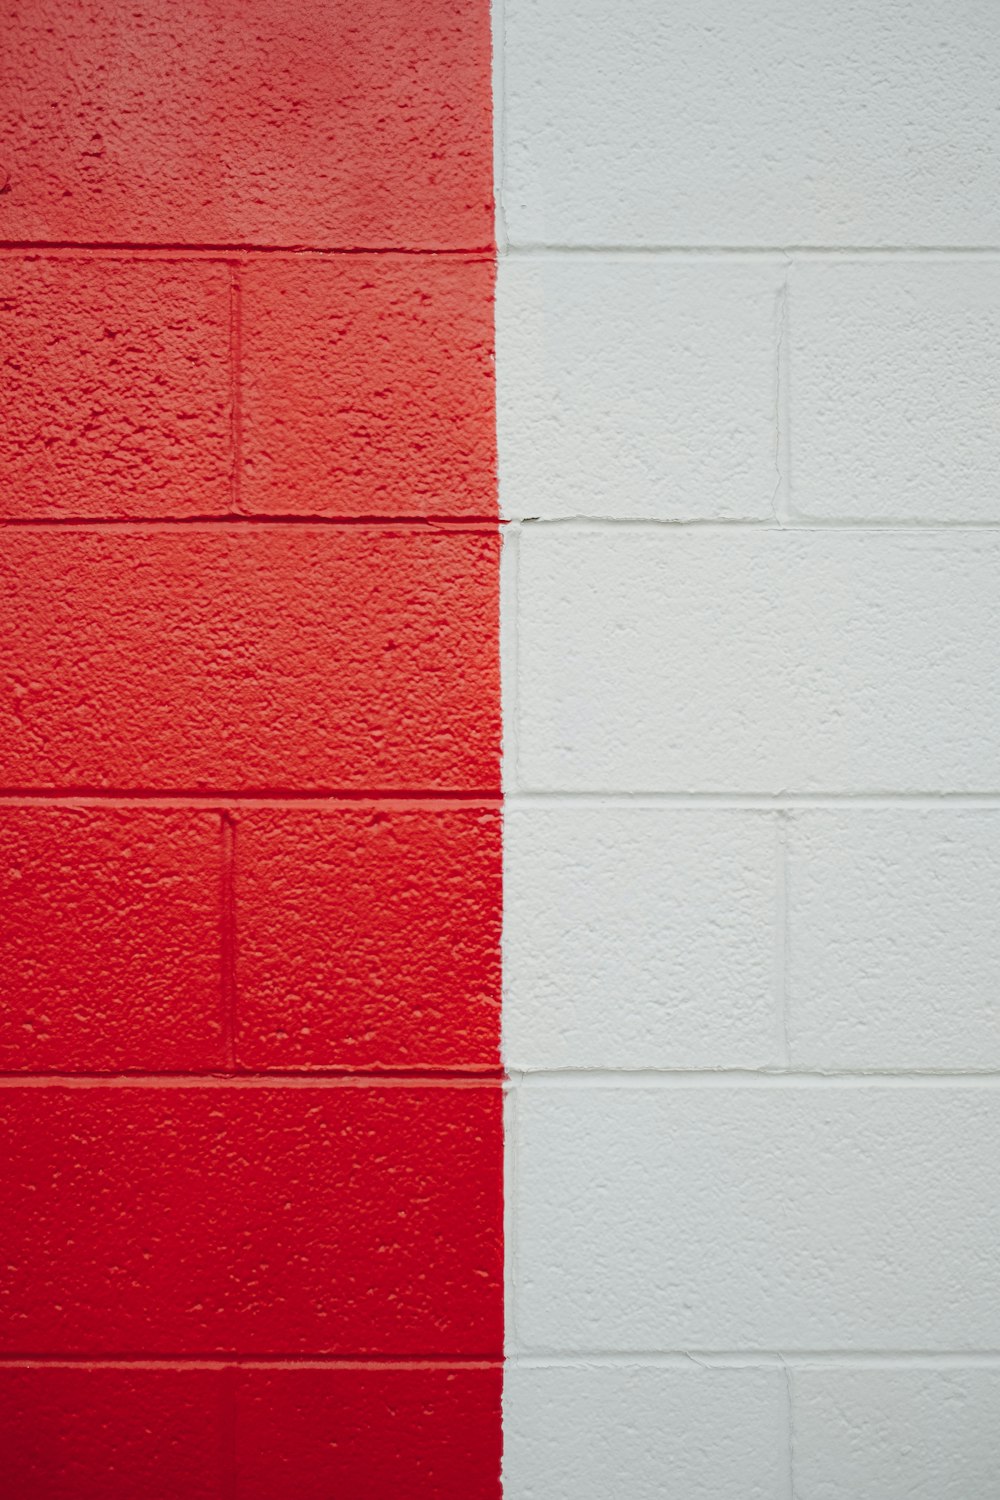 un muro rosso e bianco con una striscia rossa e bianca